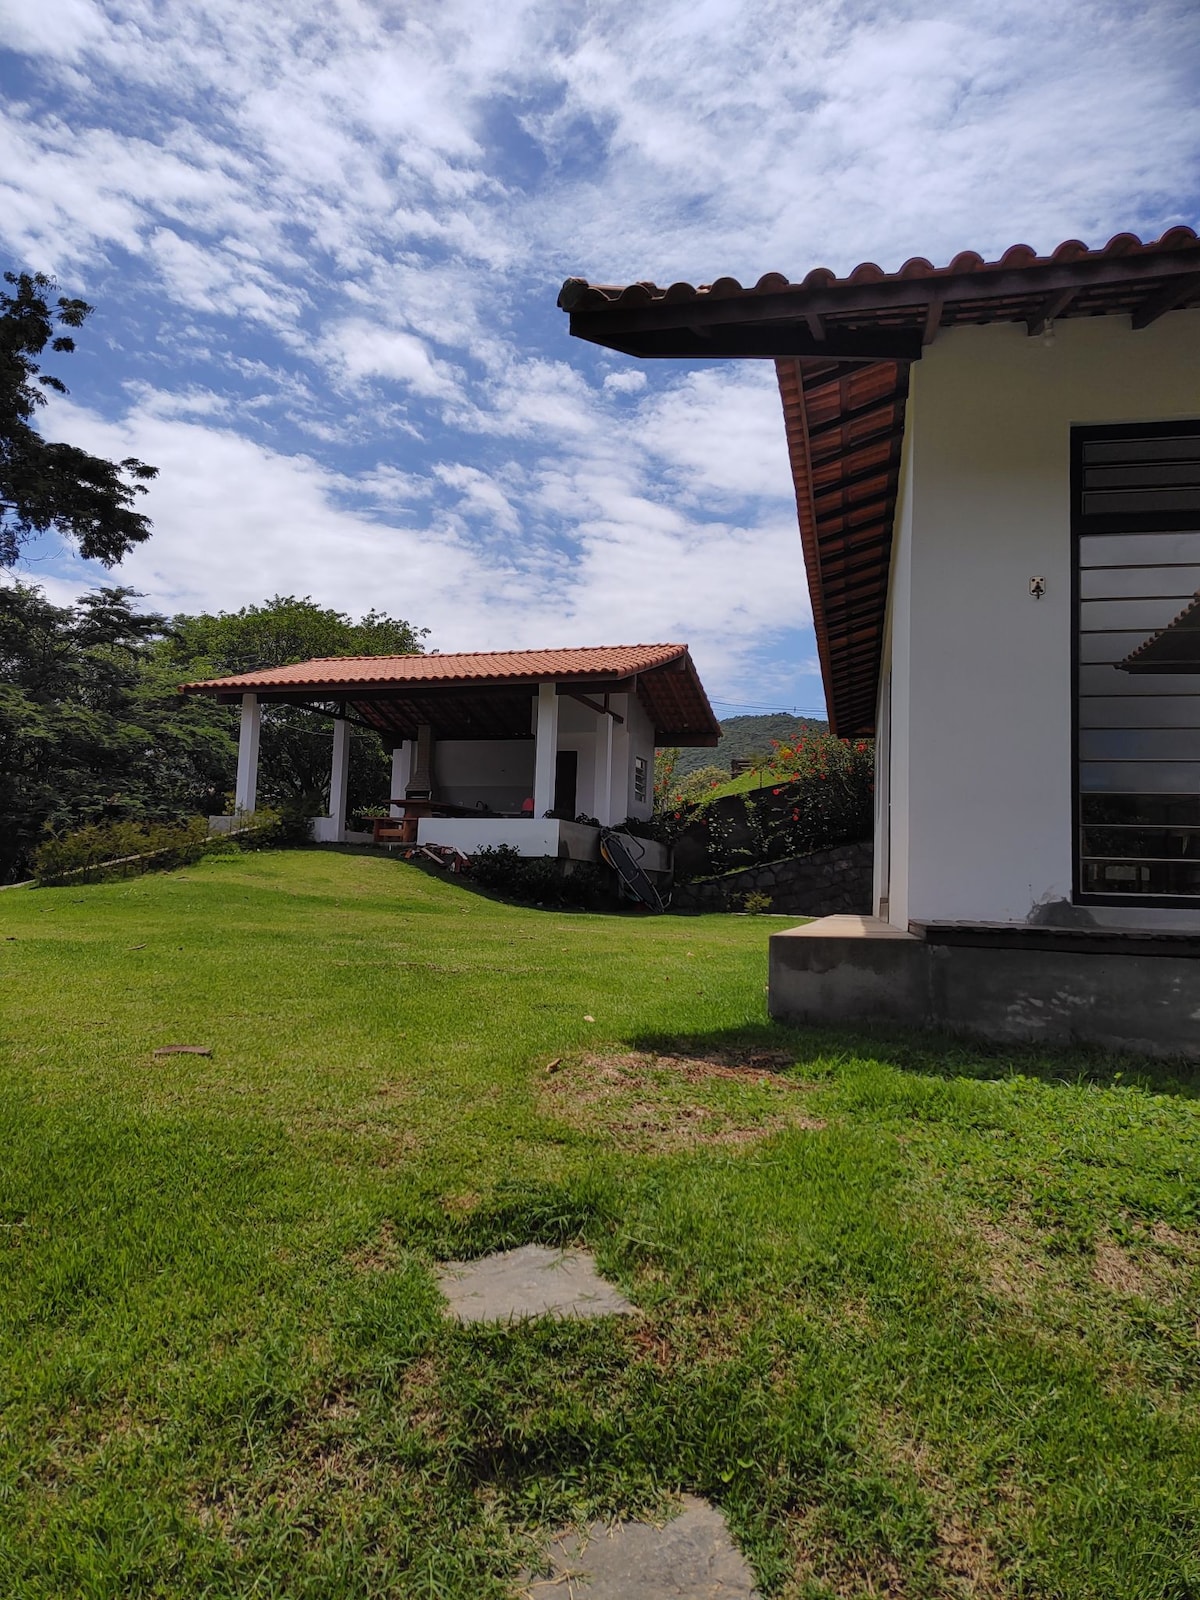 Casa em Miguel Pereira, RJ, com vista magnífica.